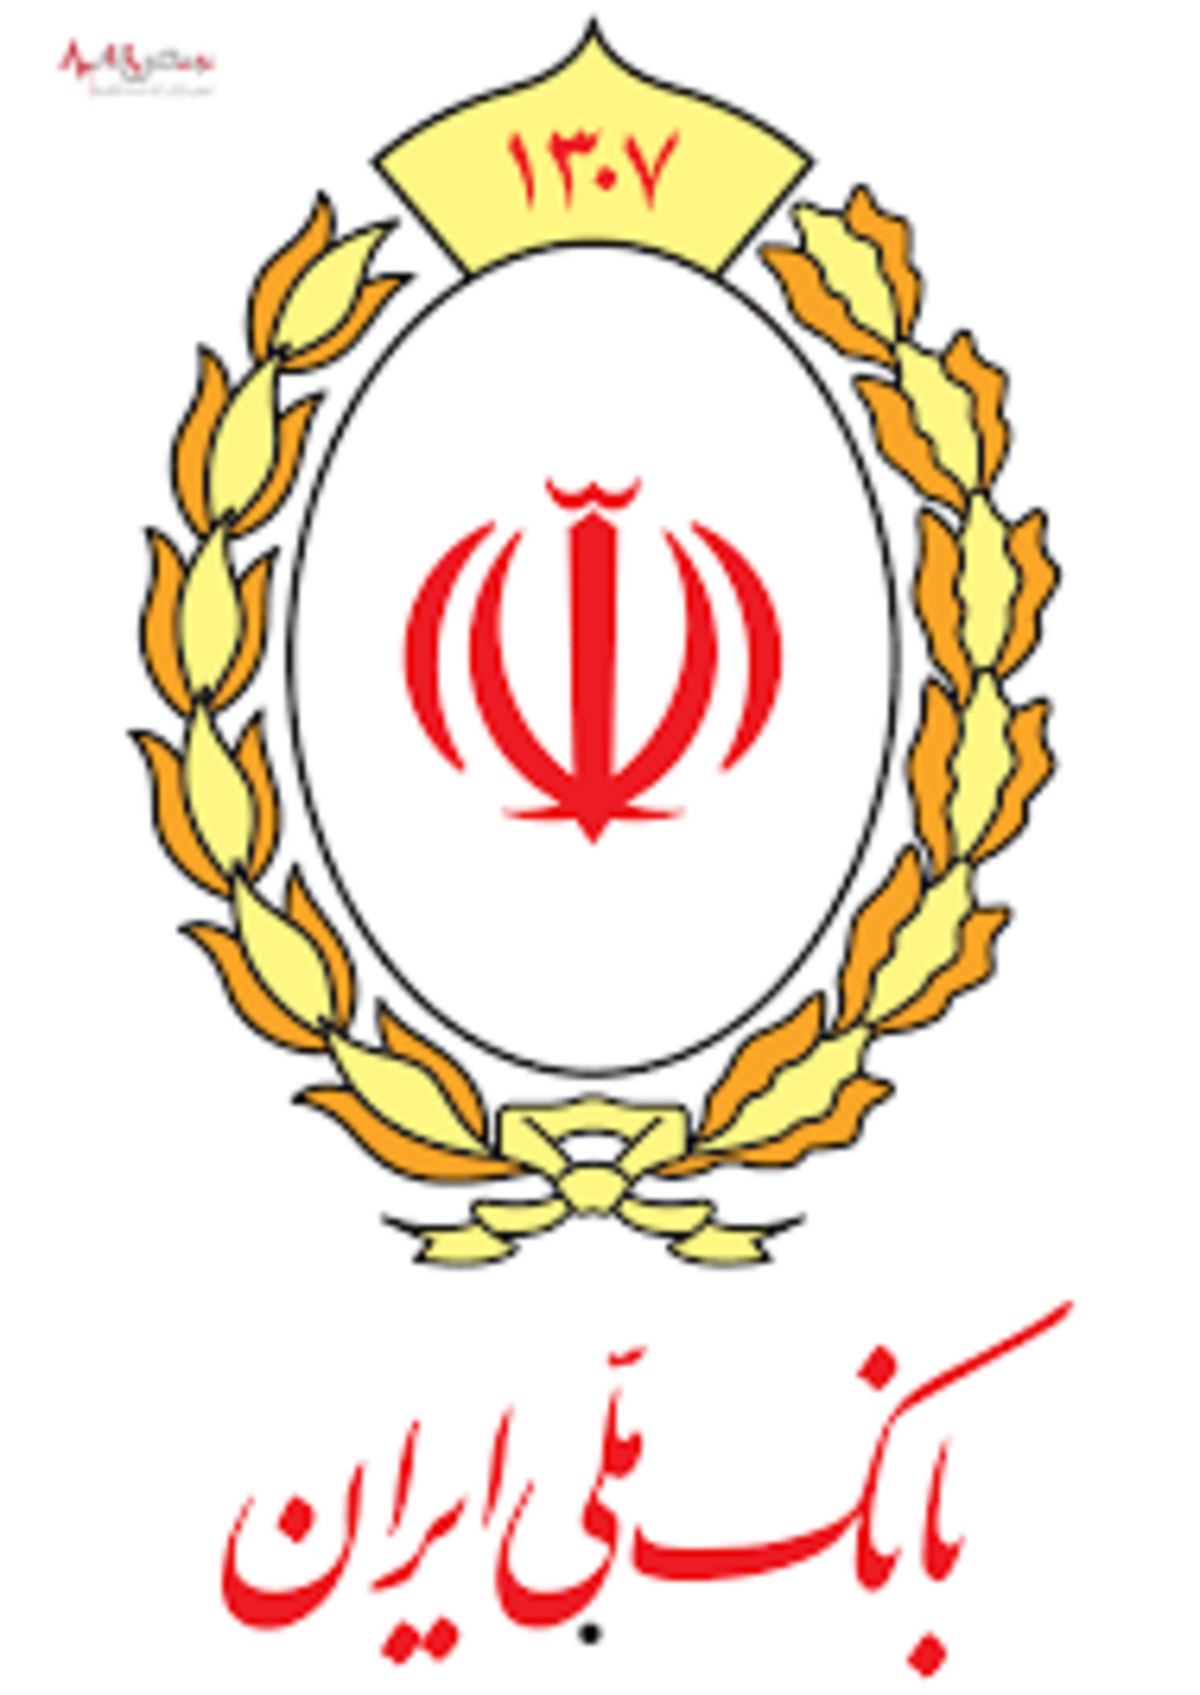 ادعای سرمایه گذاری بانک ملی ایران در دبی صحت ندارد